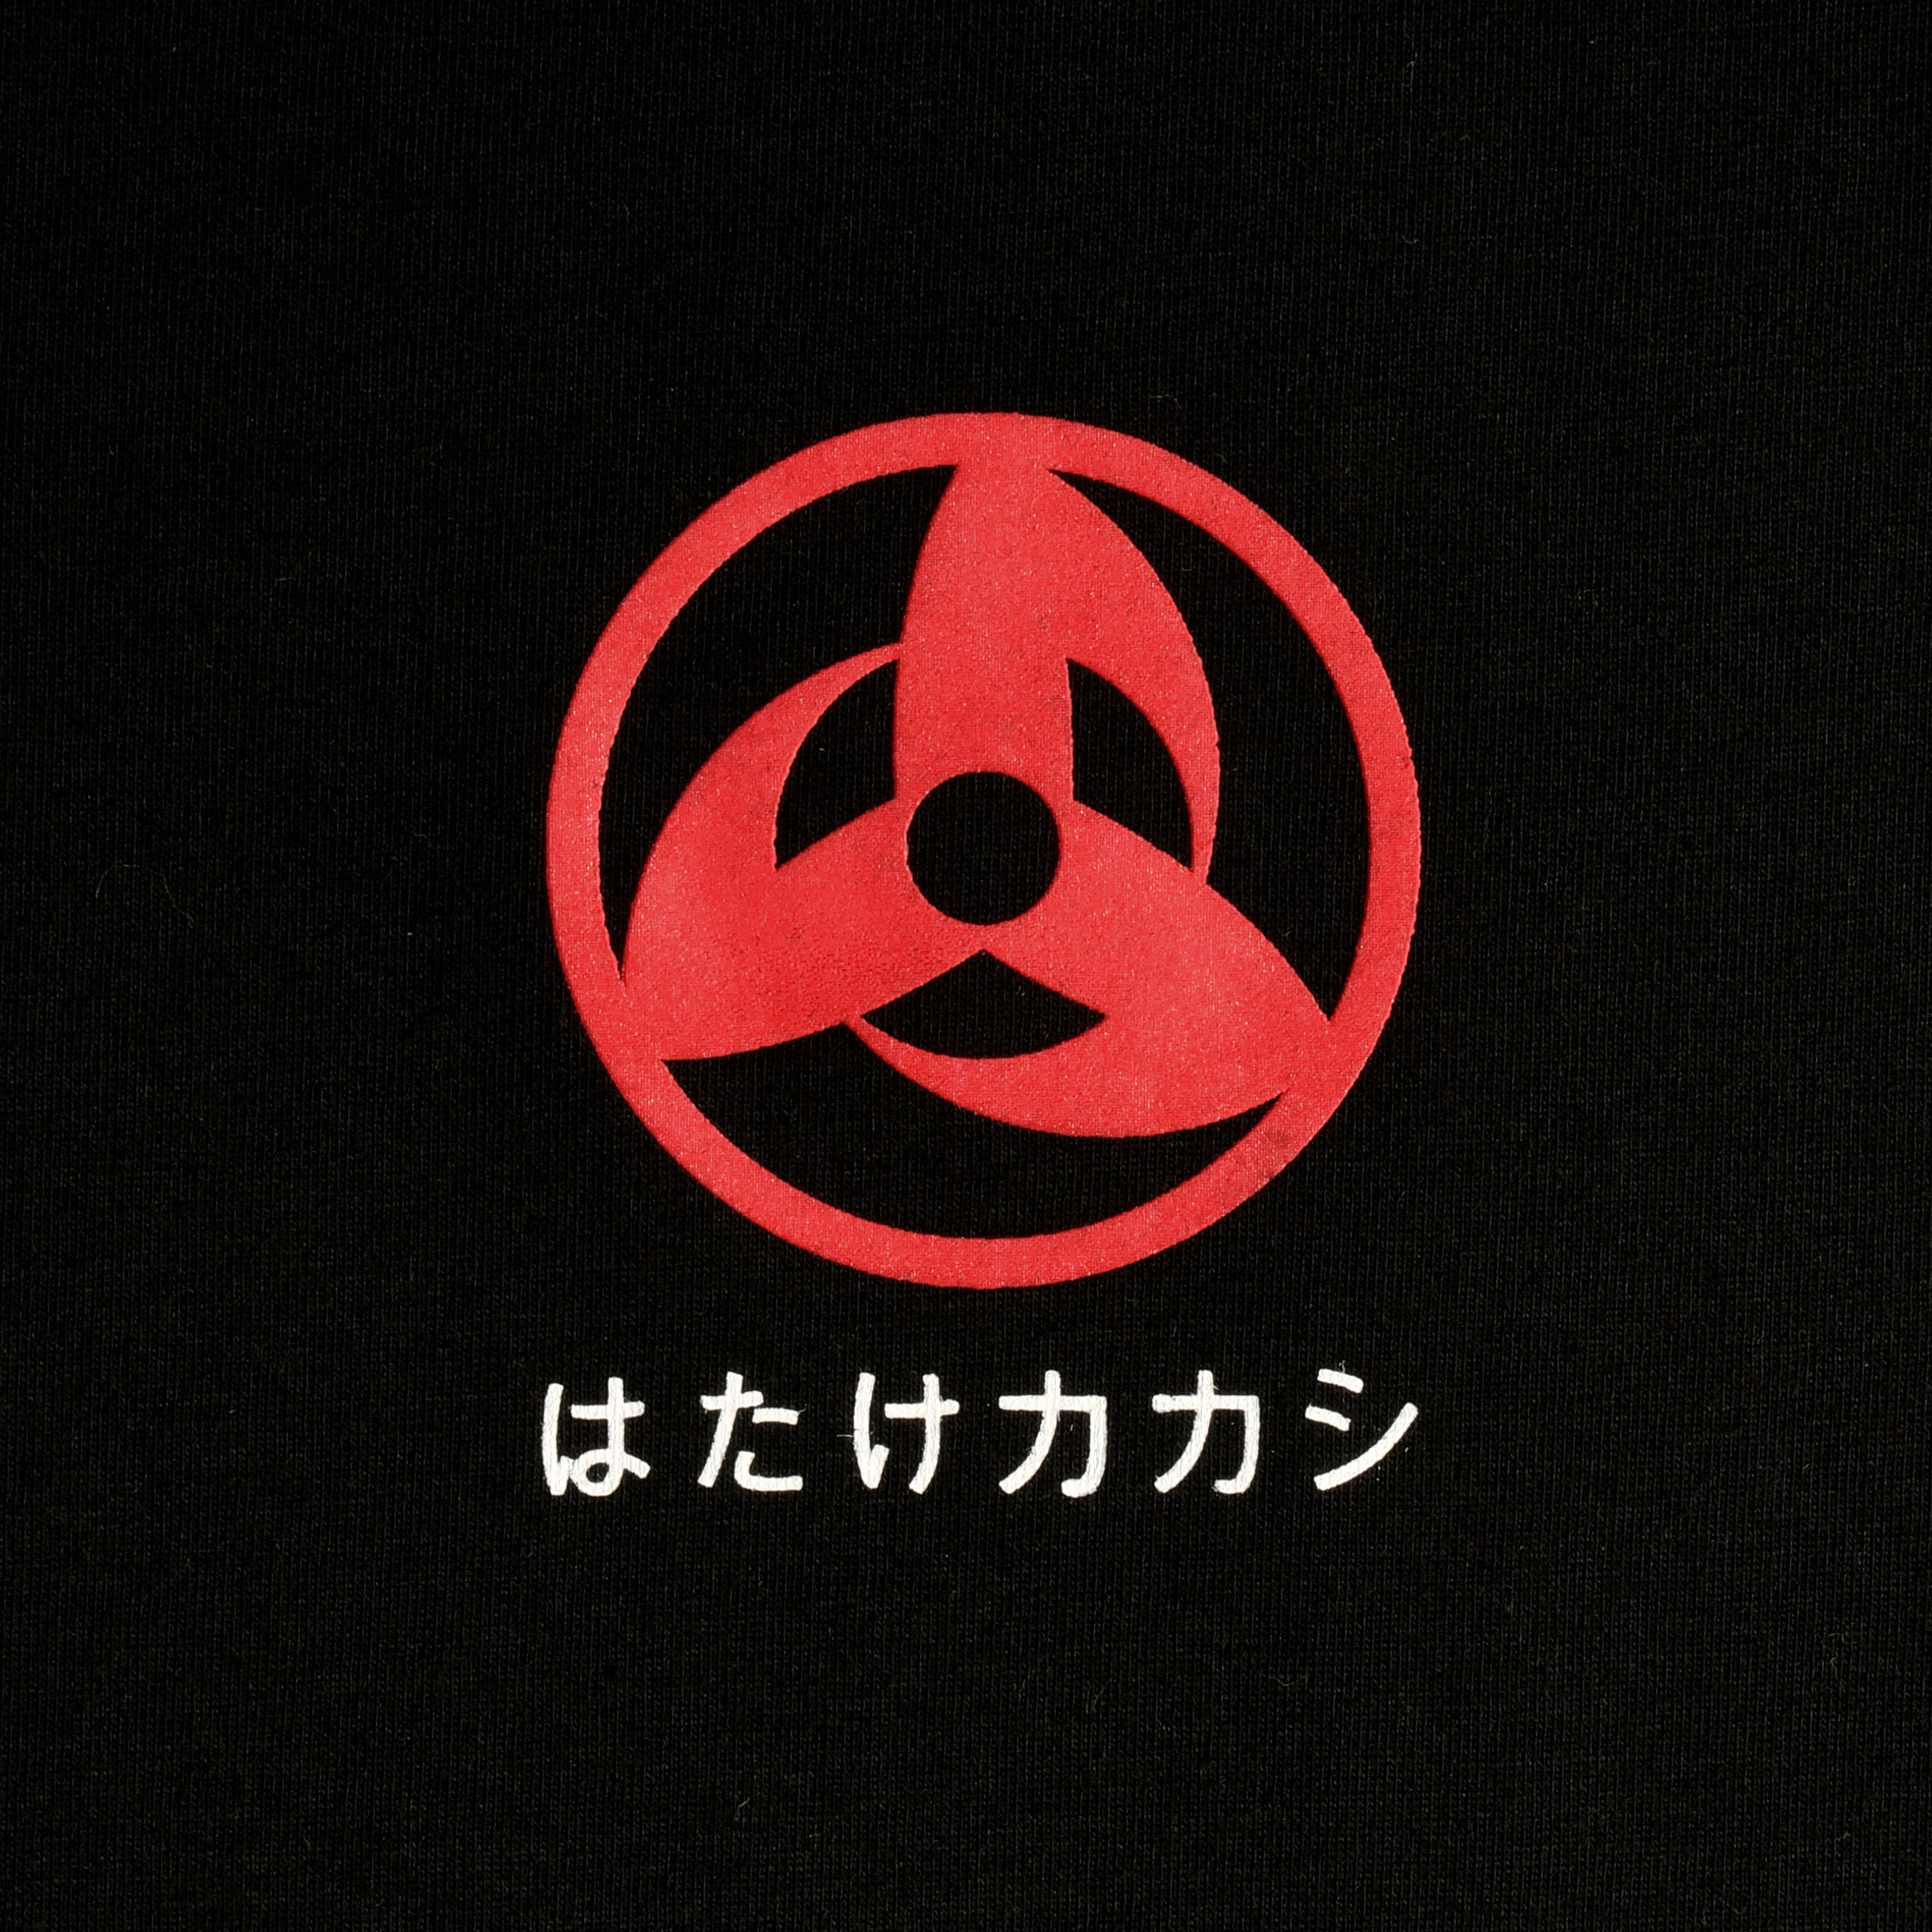 Naruto - Kakashi Hatake Poster T-Shirt schwarz